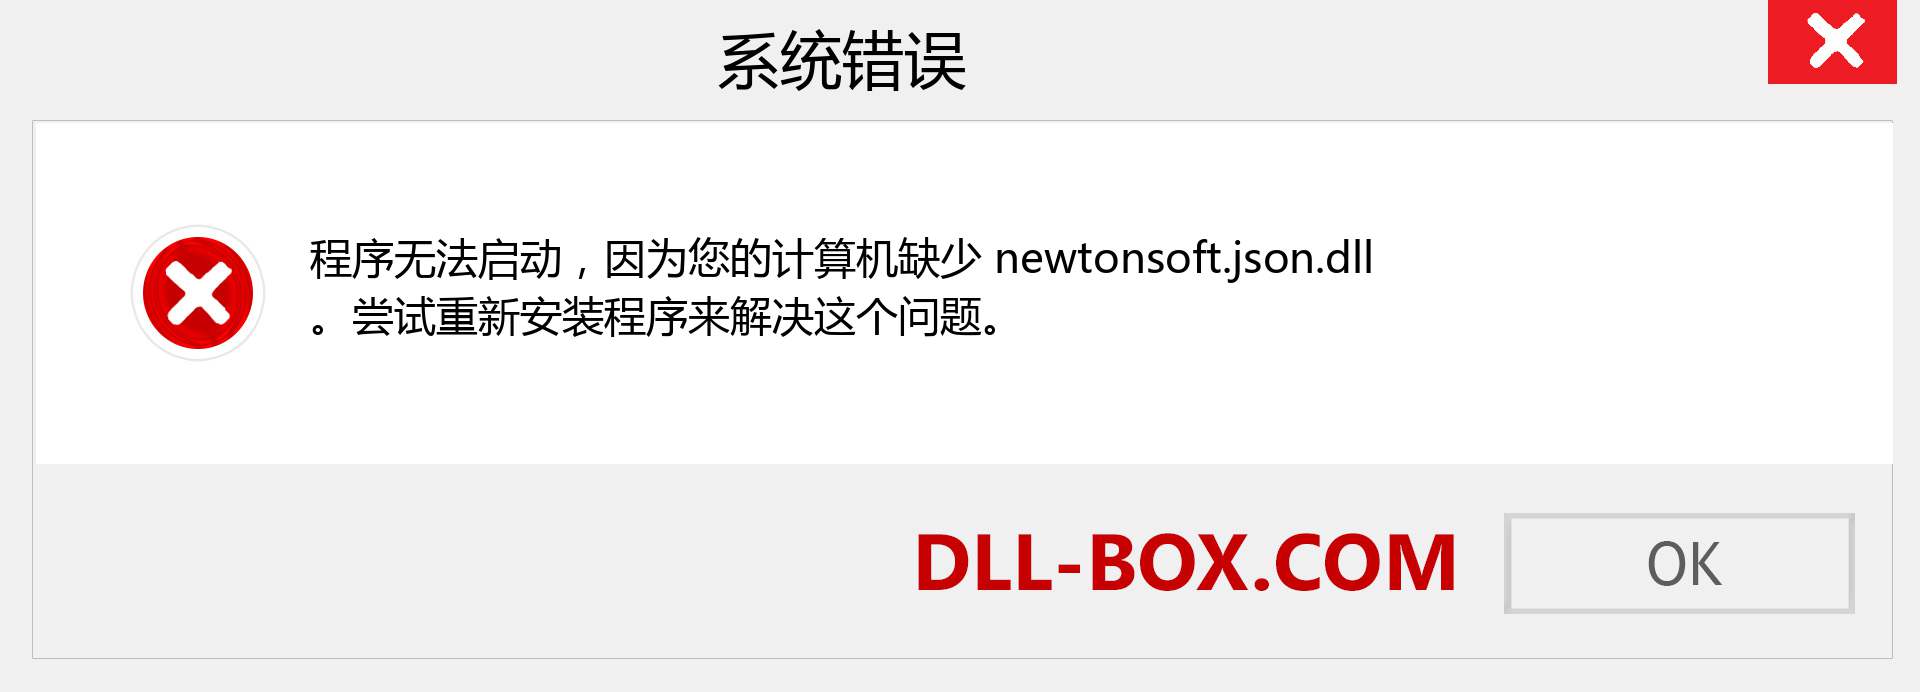 newtonsoft.json.dll 文件丢失？。 适用于 Windows 7、8、10 的下载 - 修复 Windows、照片、图像上的 newtonsoft.json dll 丢失错误